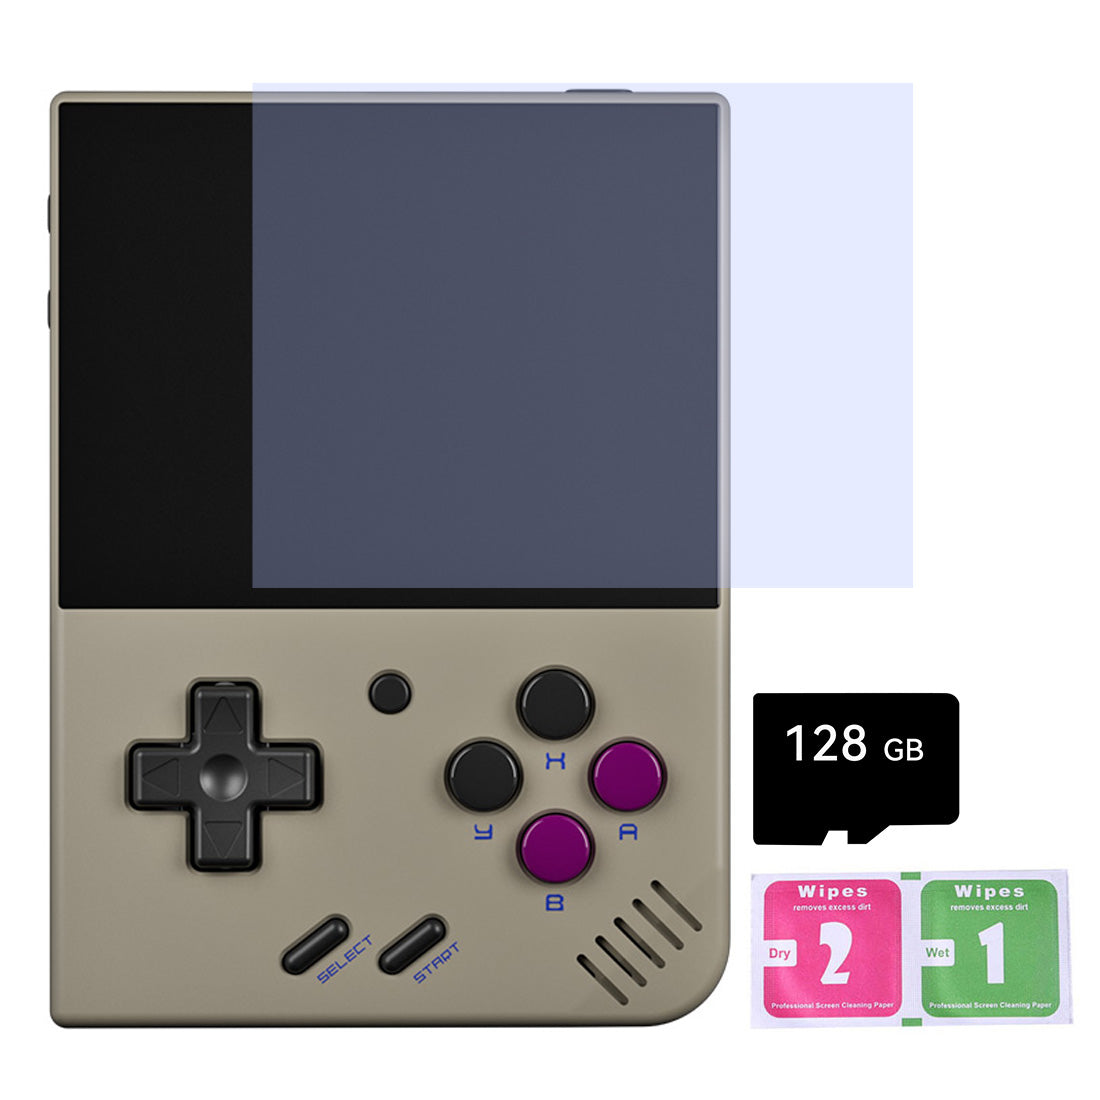 Miyoo Mini Plus Retro Handheld Game Console - Mechdiy